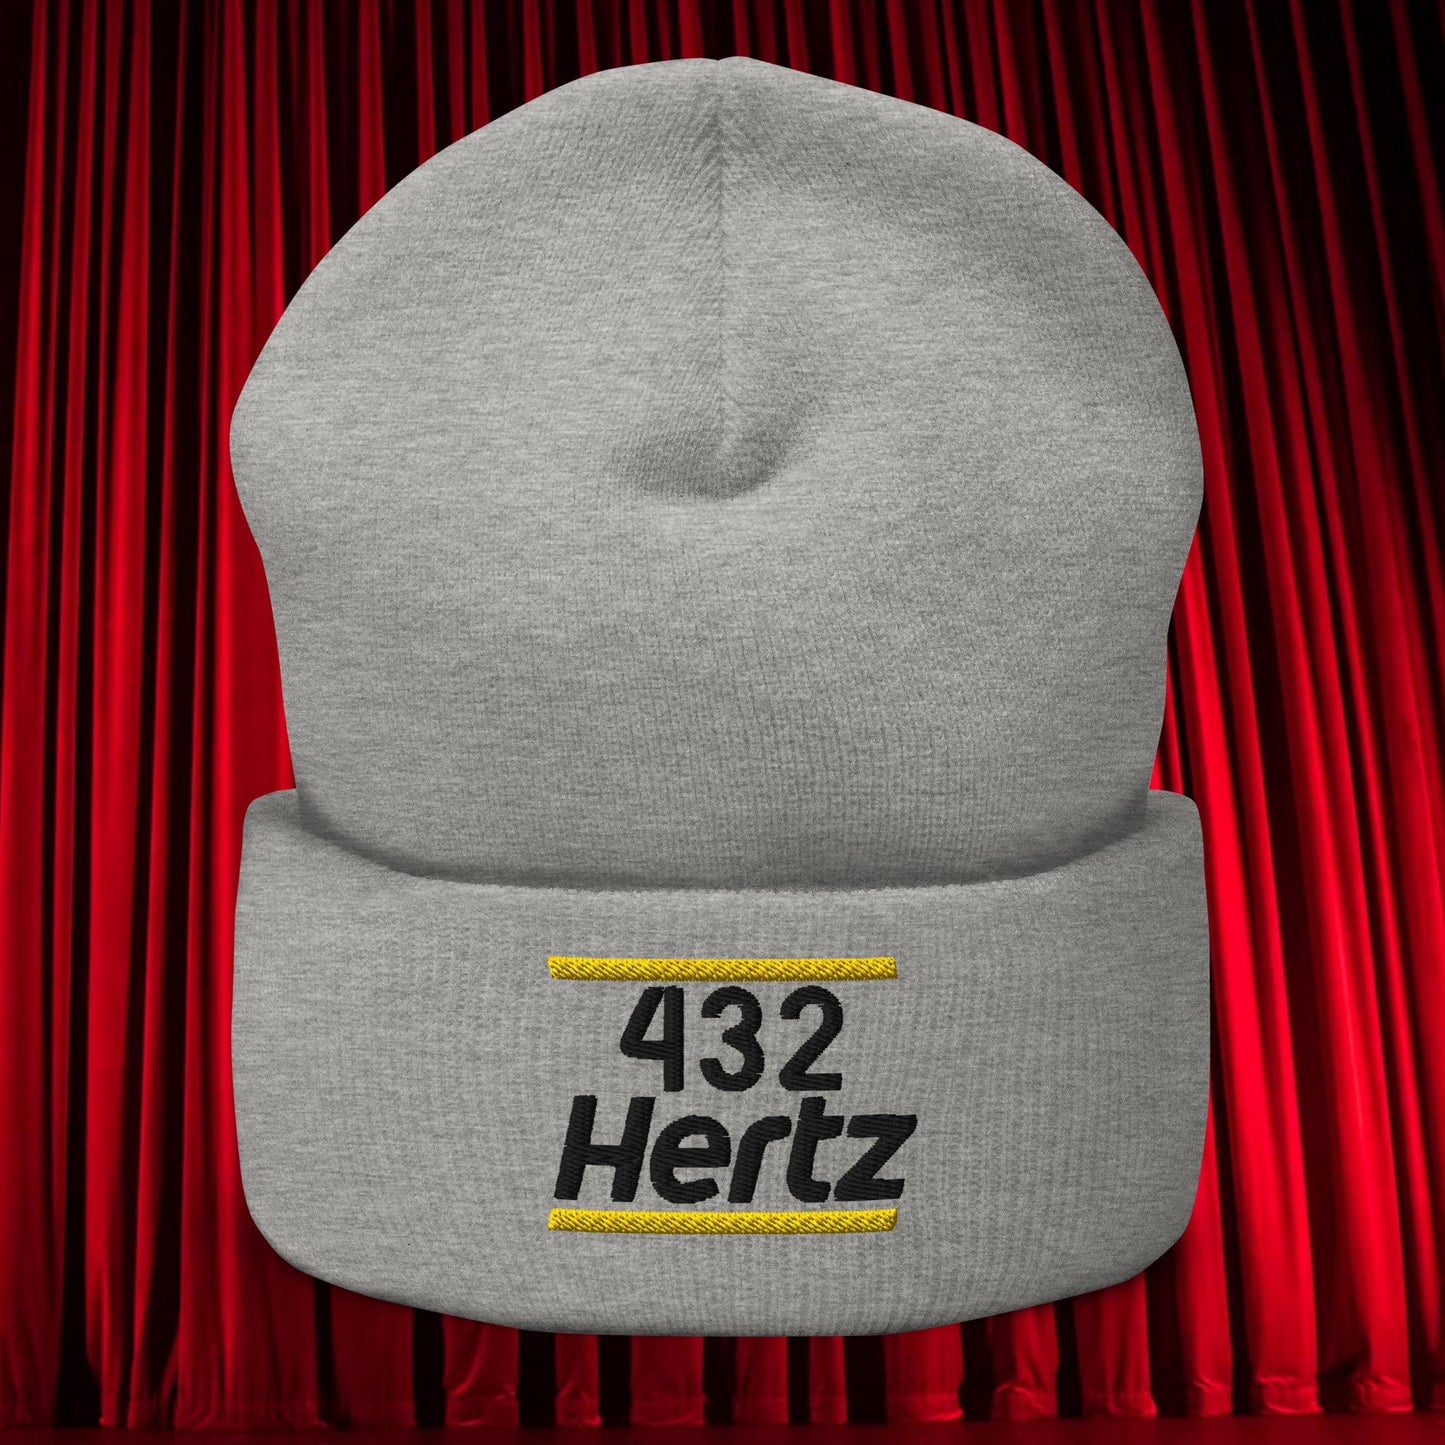 432Hz Hertz Matt and Shane's Secret Podcast MSSP Cuffed Beanie Next Cult Brand